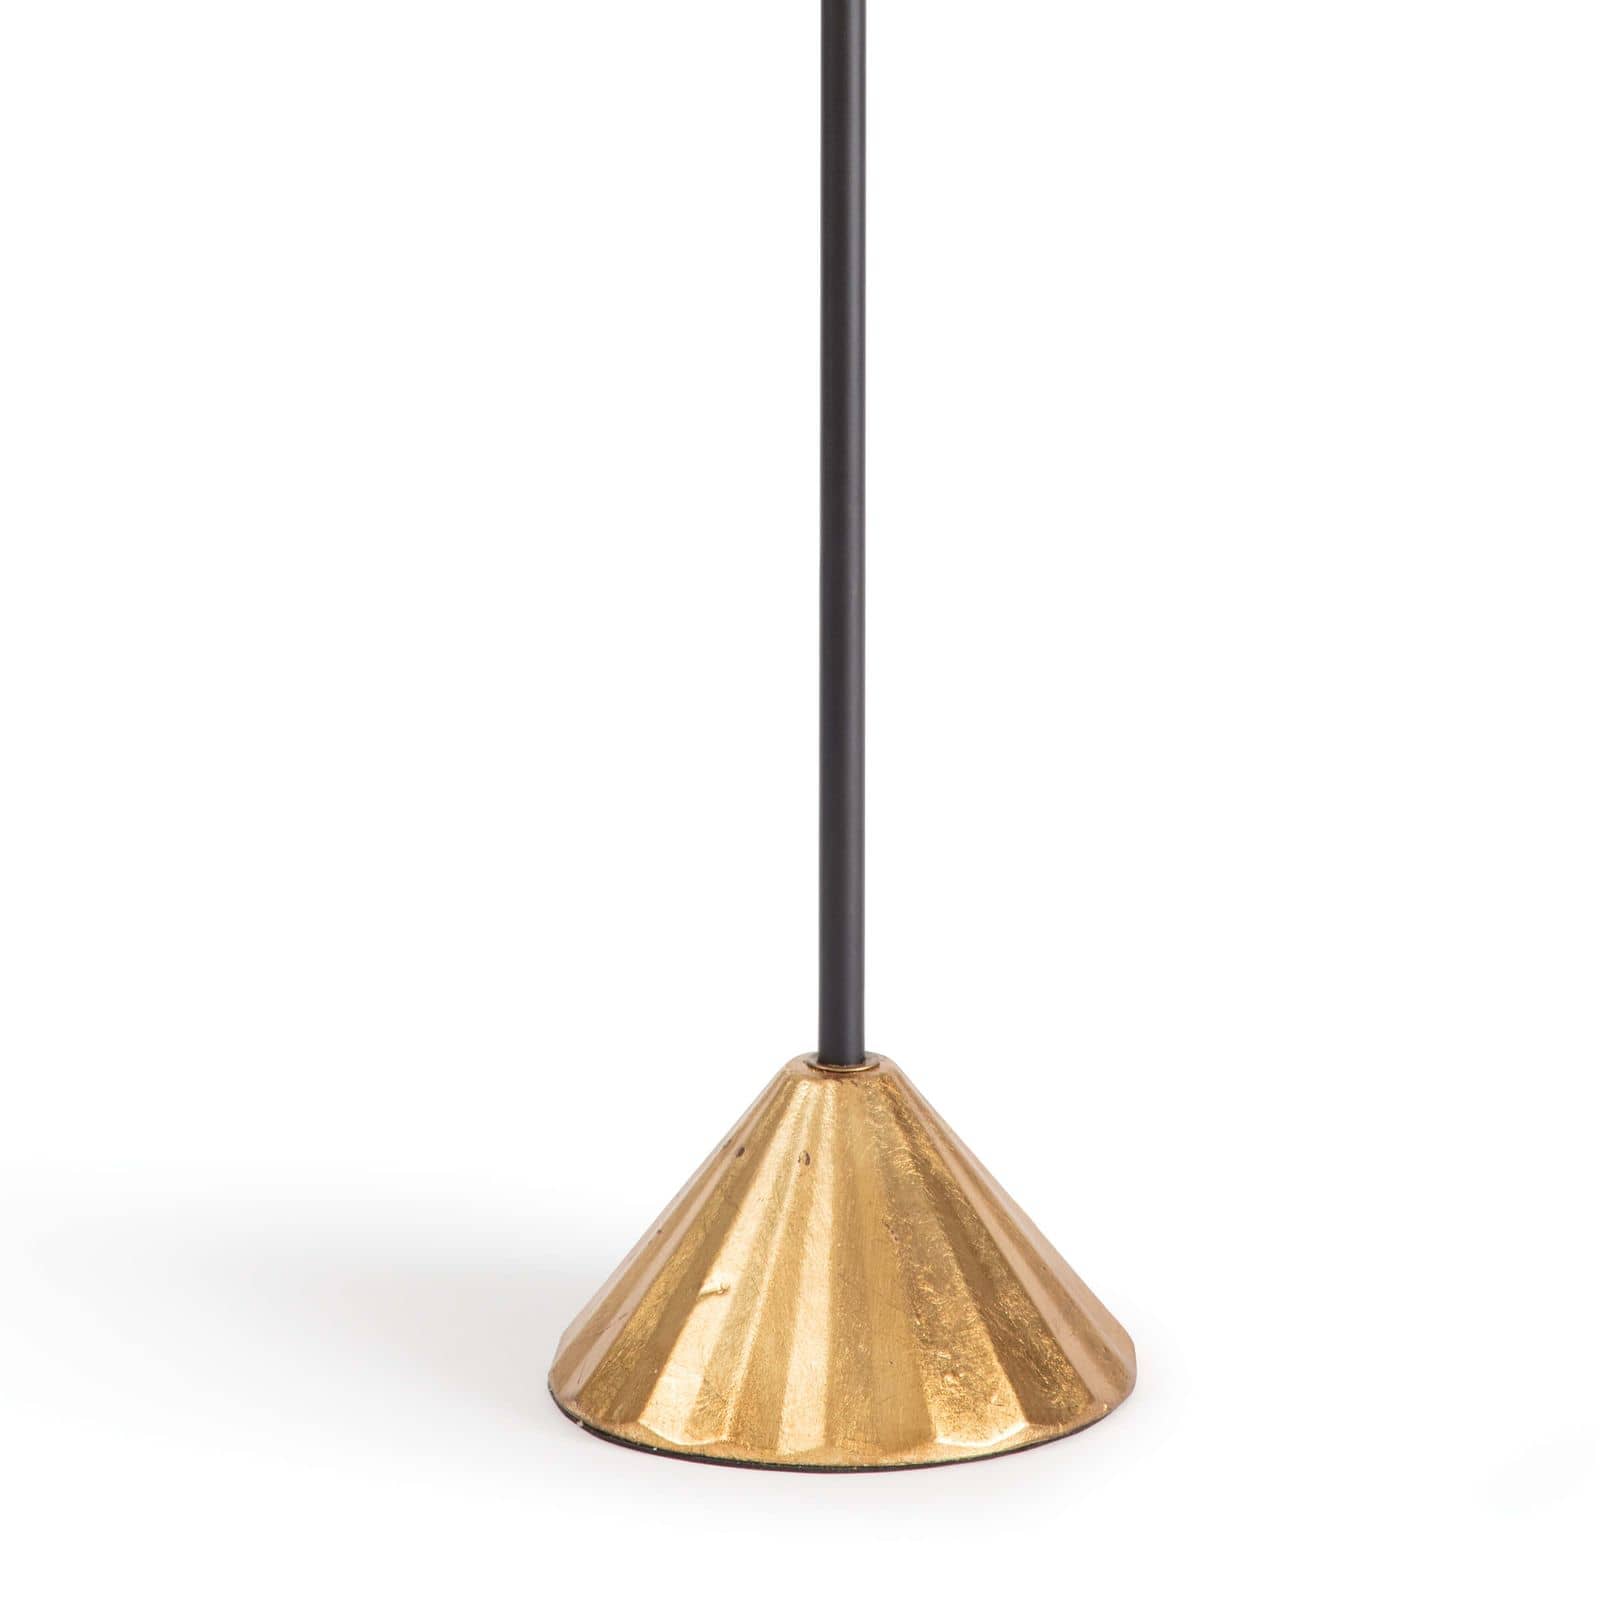 Regina Andrew  Parasol Table Lamp | Overstock Lamp Overstock / Open Box   